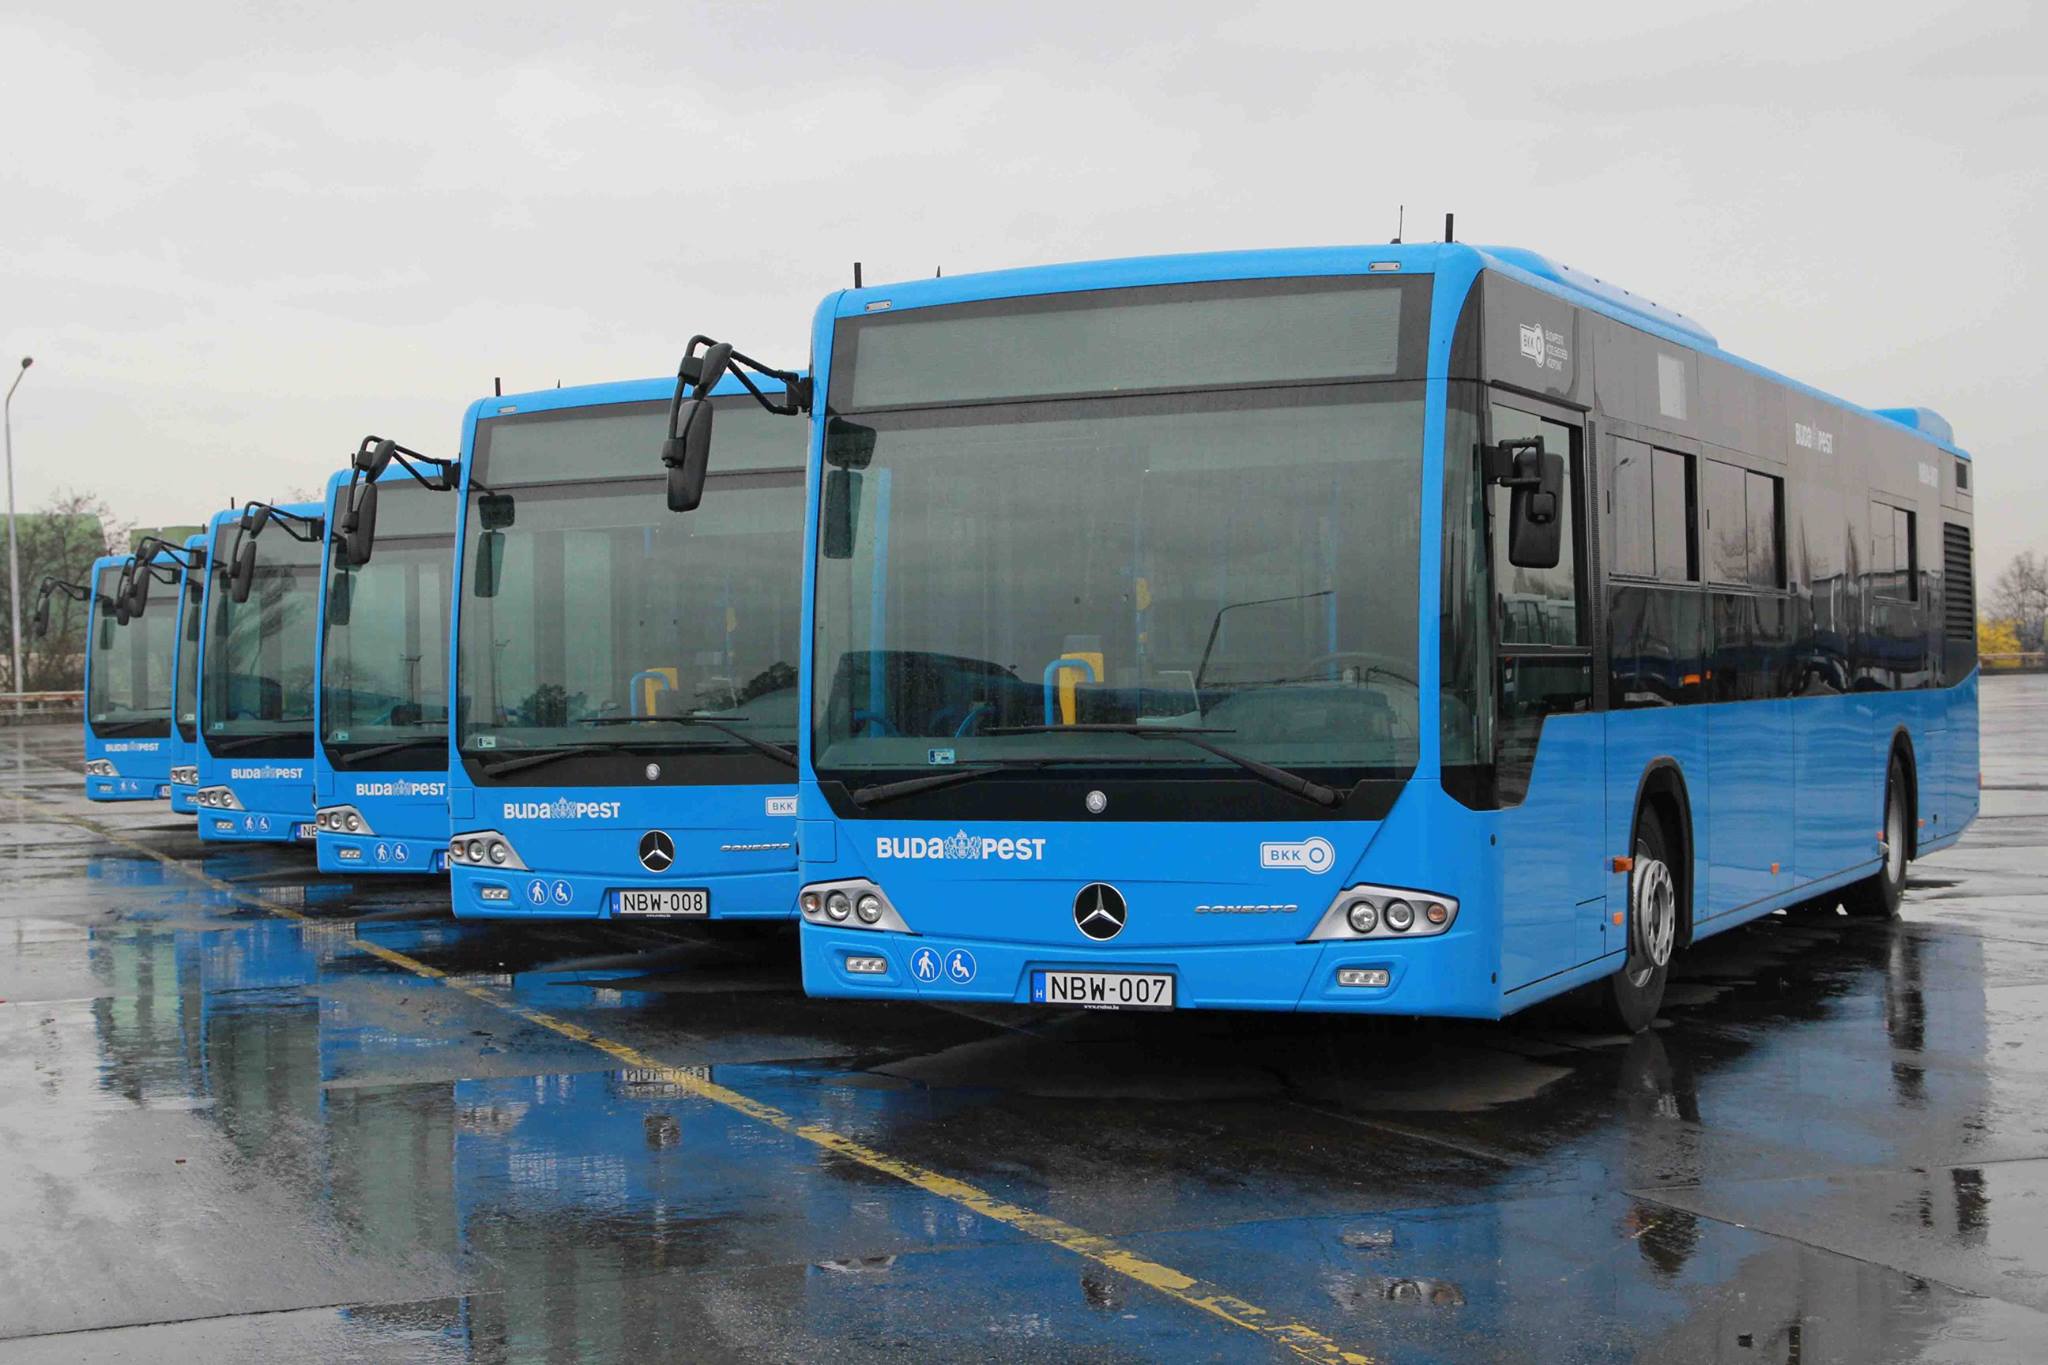 Buszgyártók az InnoTrans 2022 kiállításon: idén is lesz bőven látnivaló